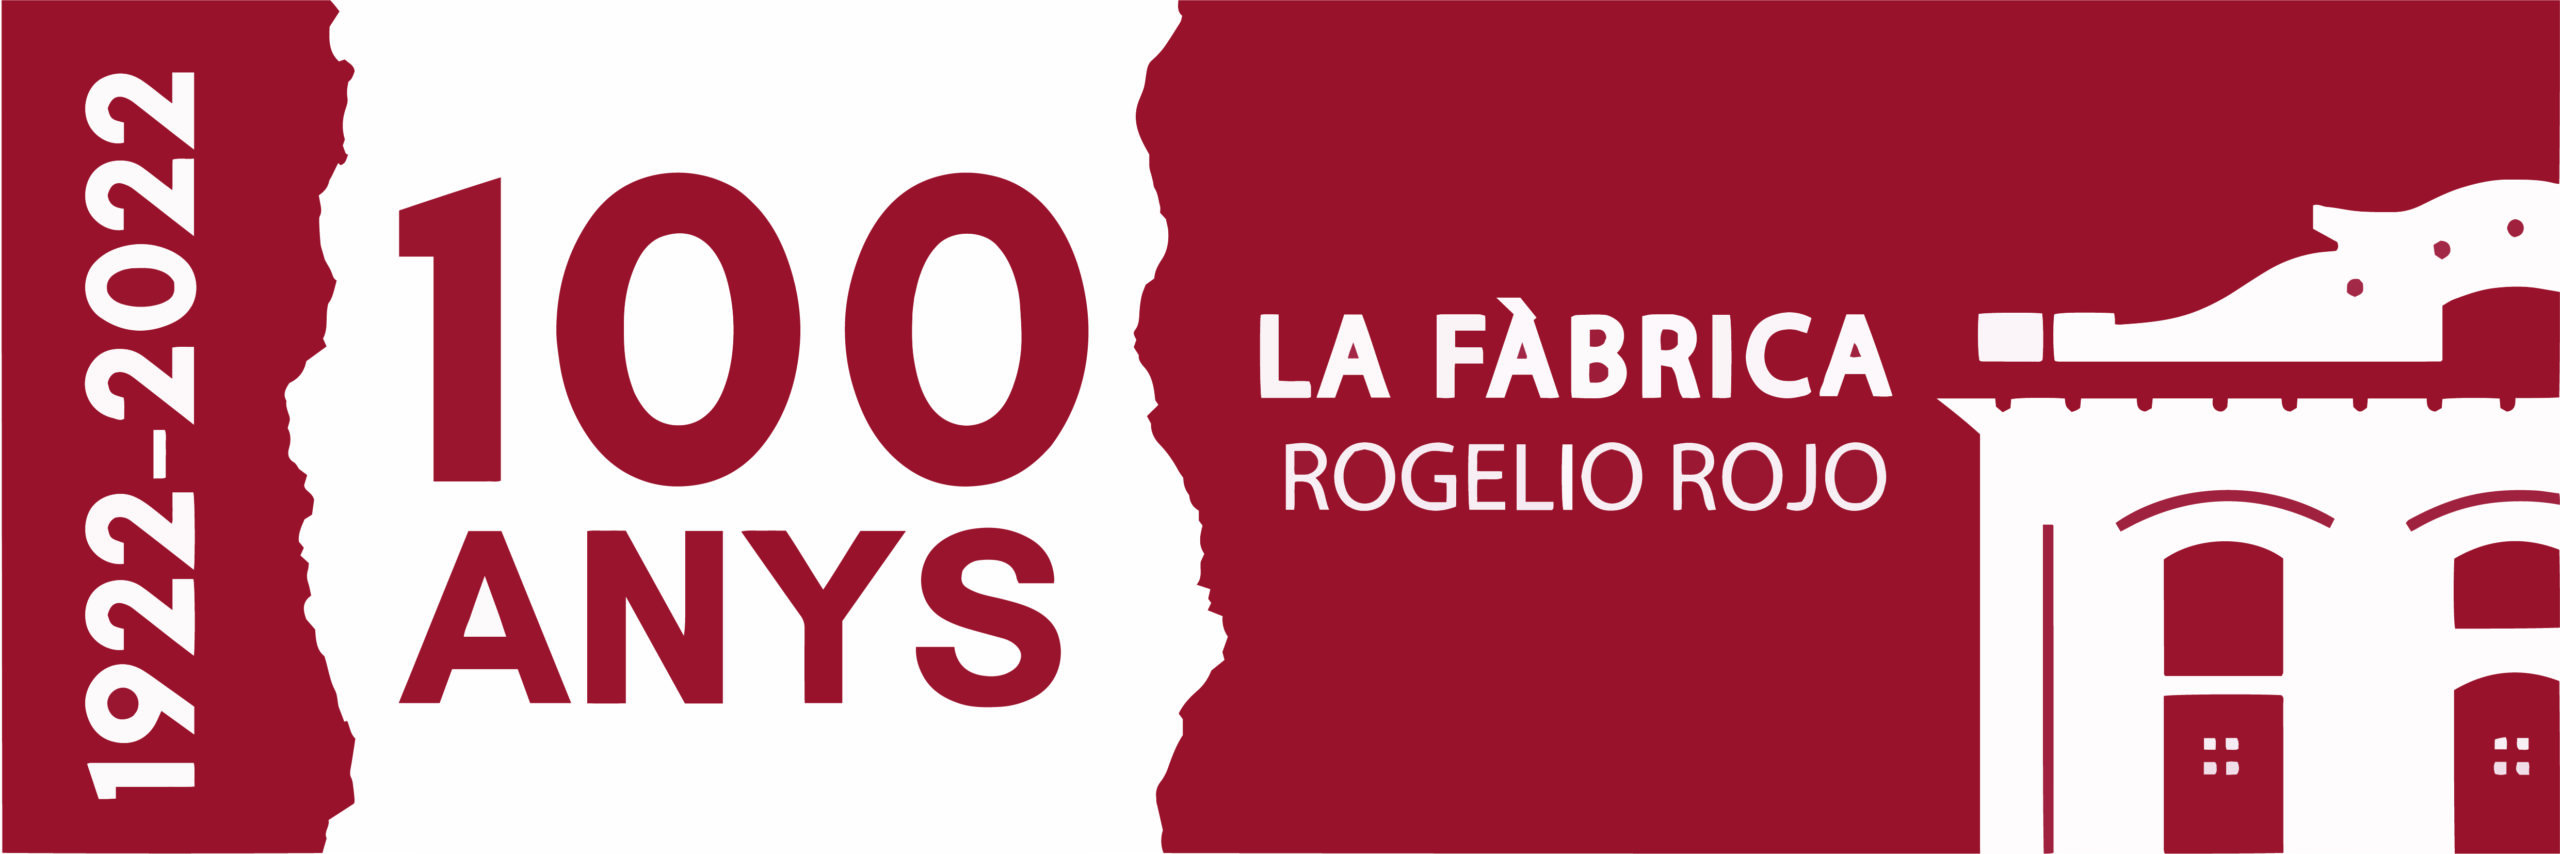 Commemoració del centenari de La Fàbrica Rogelio Rojo